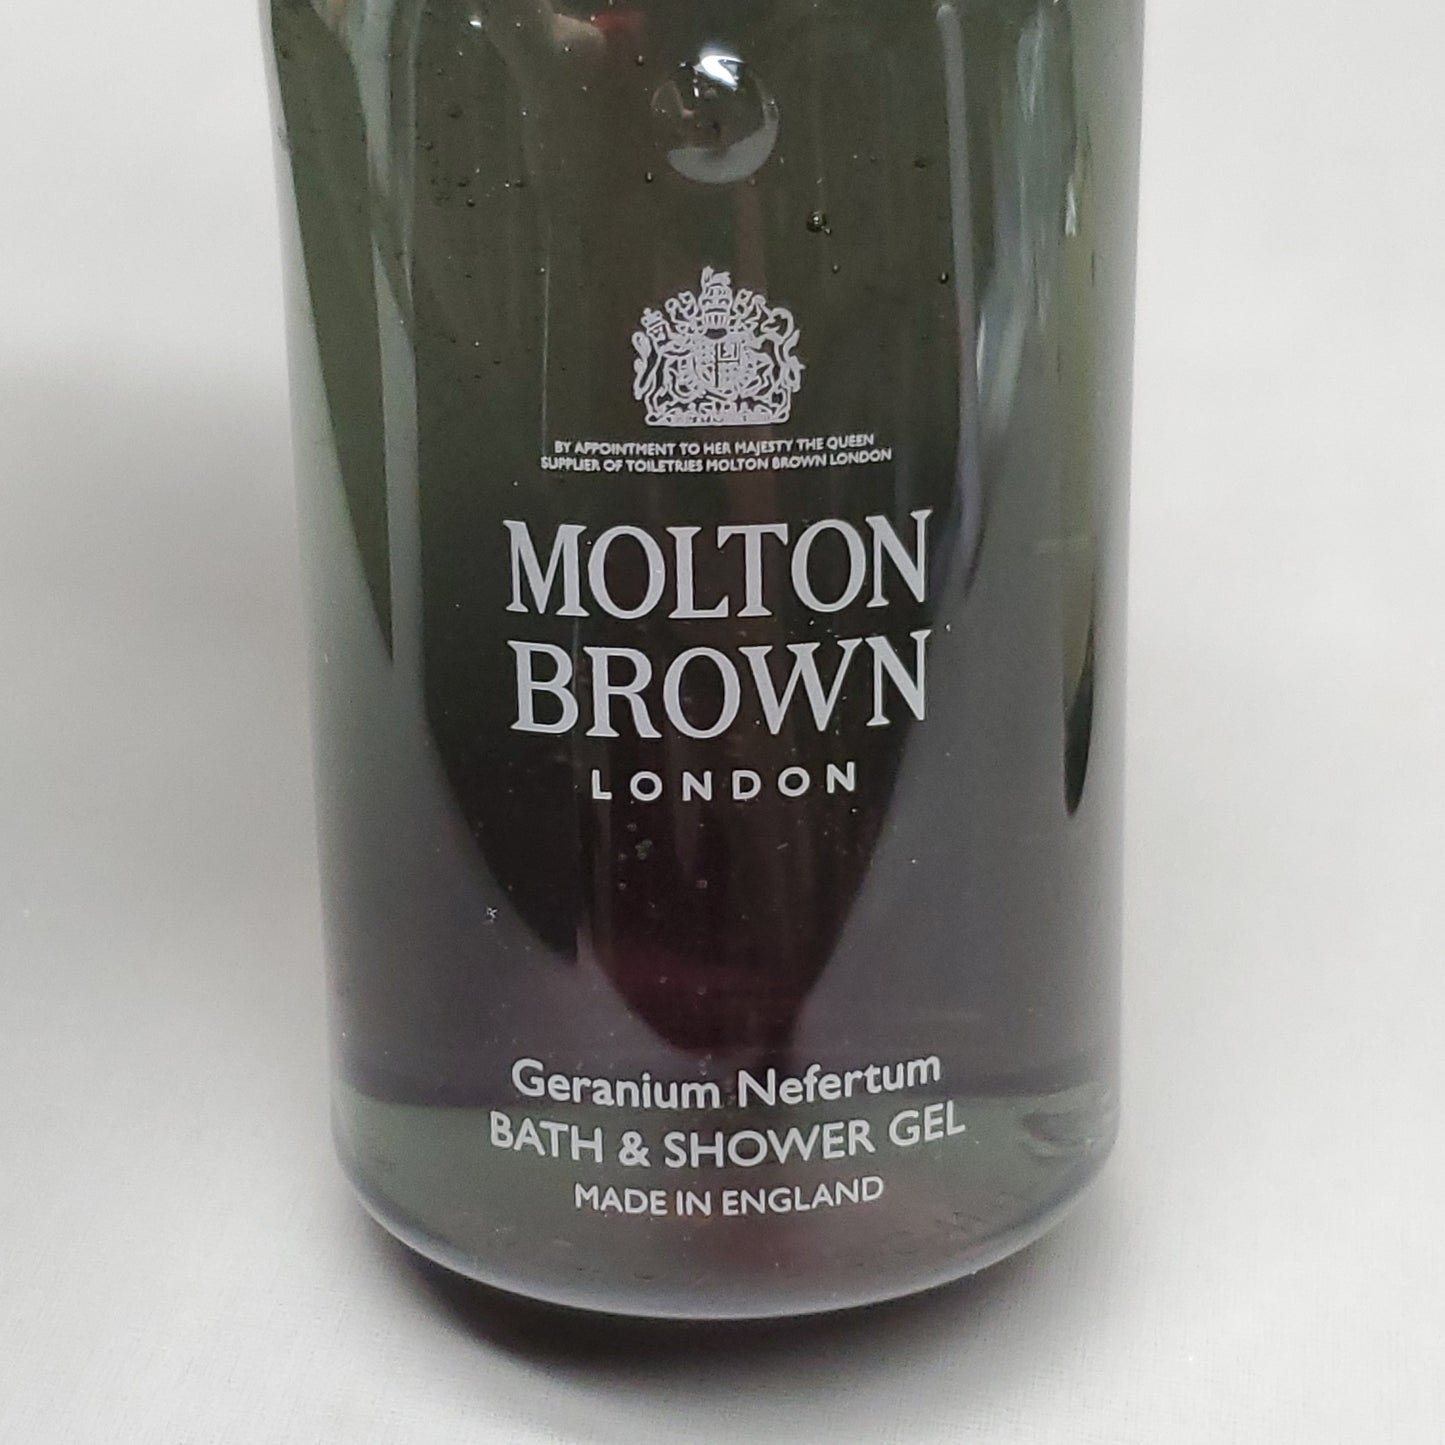 MOLTON BROWN London 2 pc set Geranium Nefertum Bath & Shower Gel 10 fl oz & Eau de Toilette 1.7 fl oz